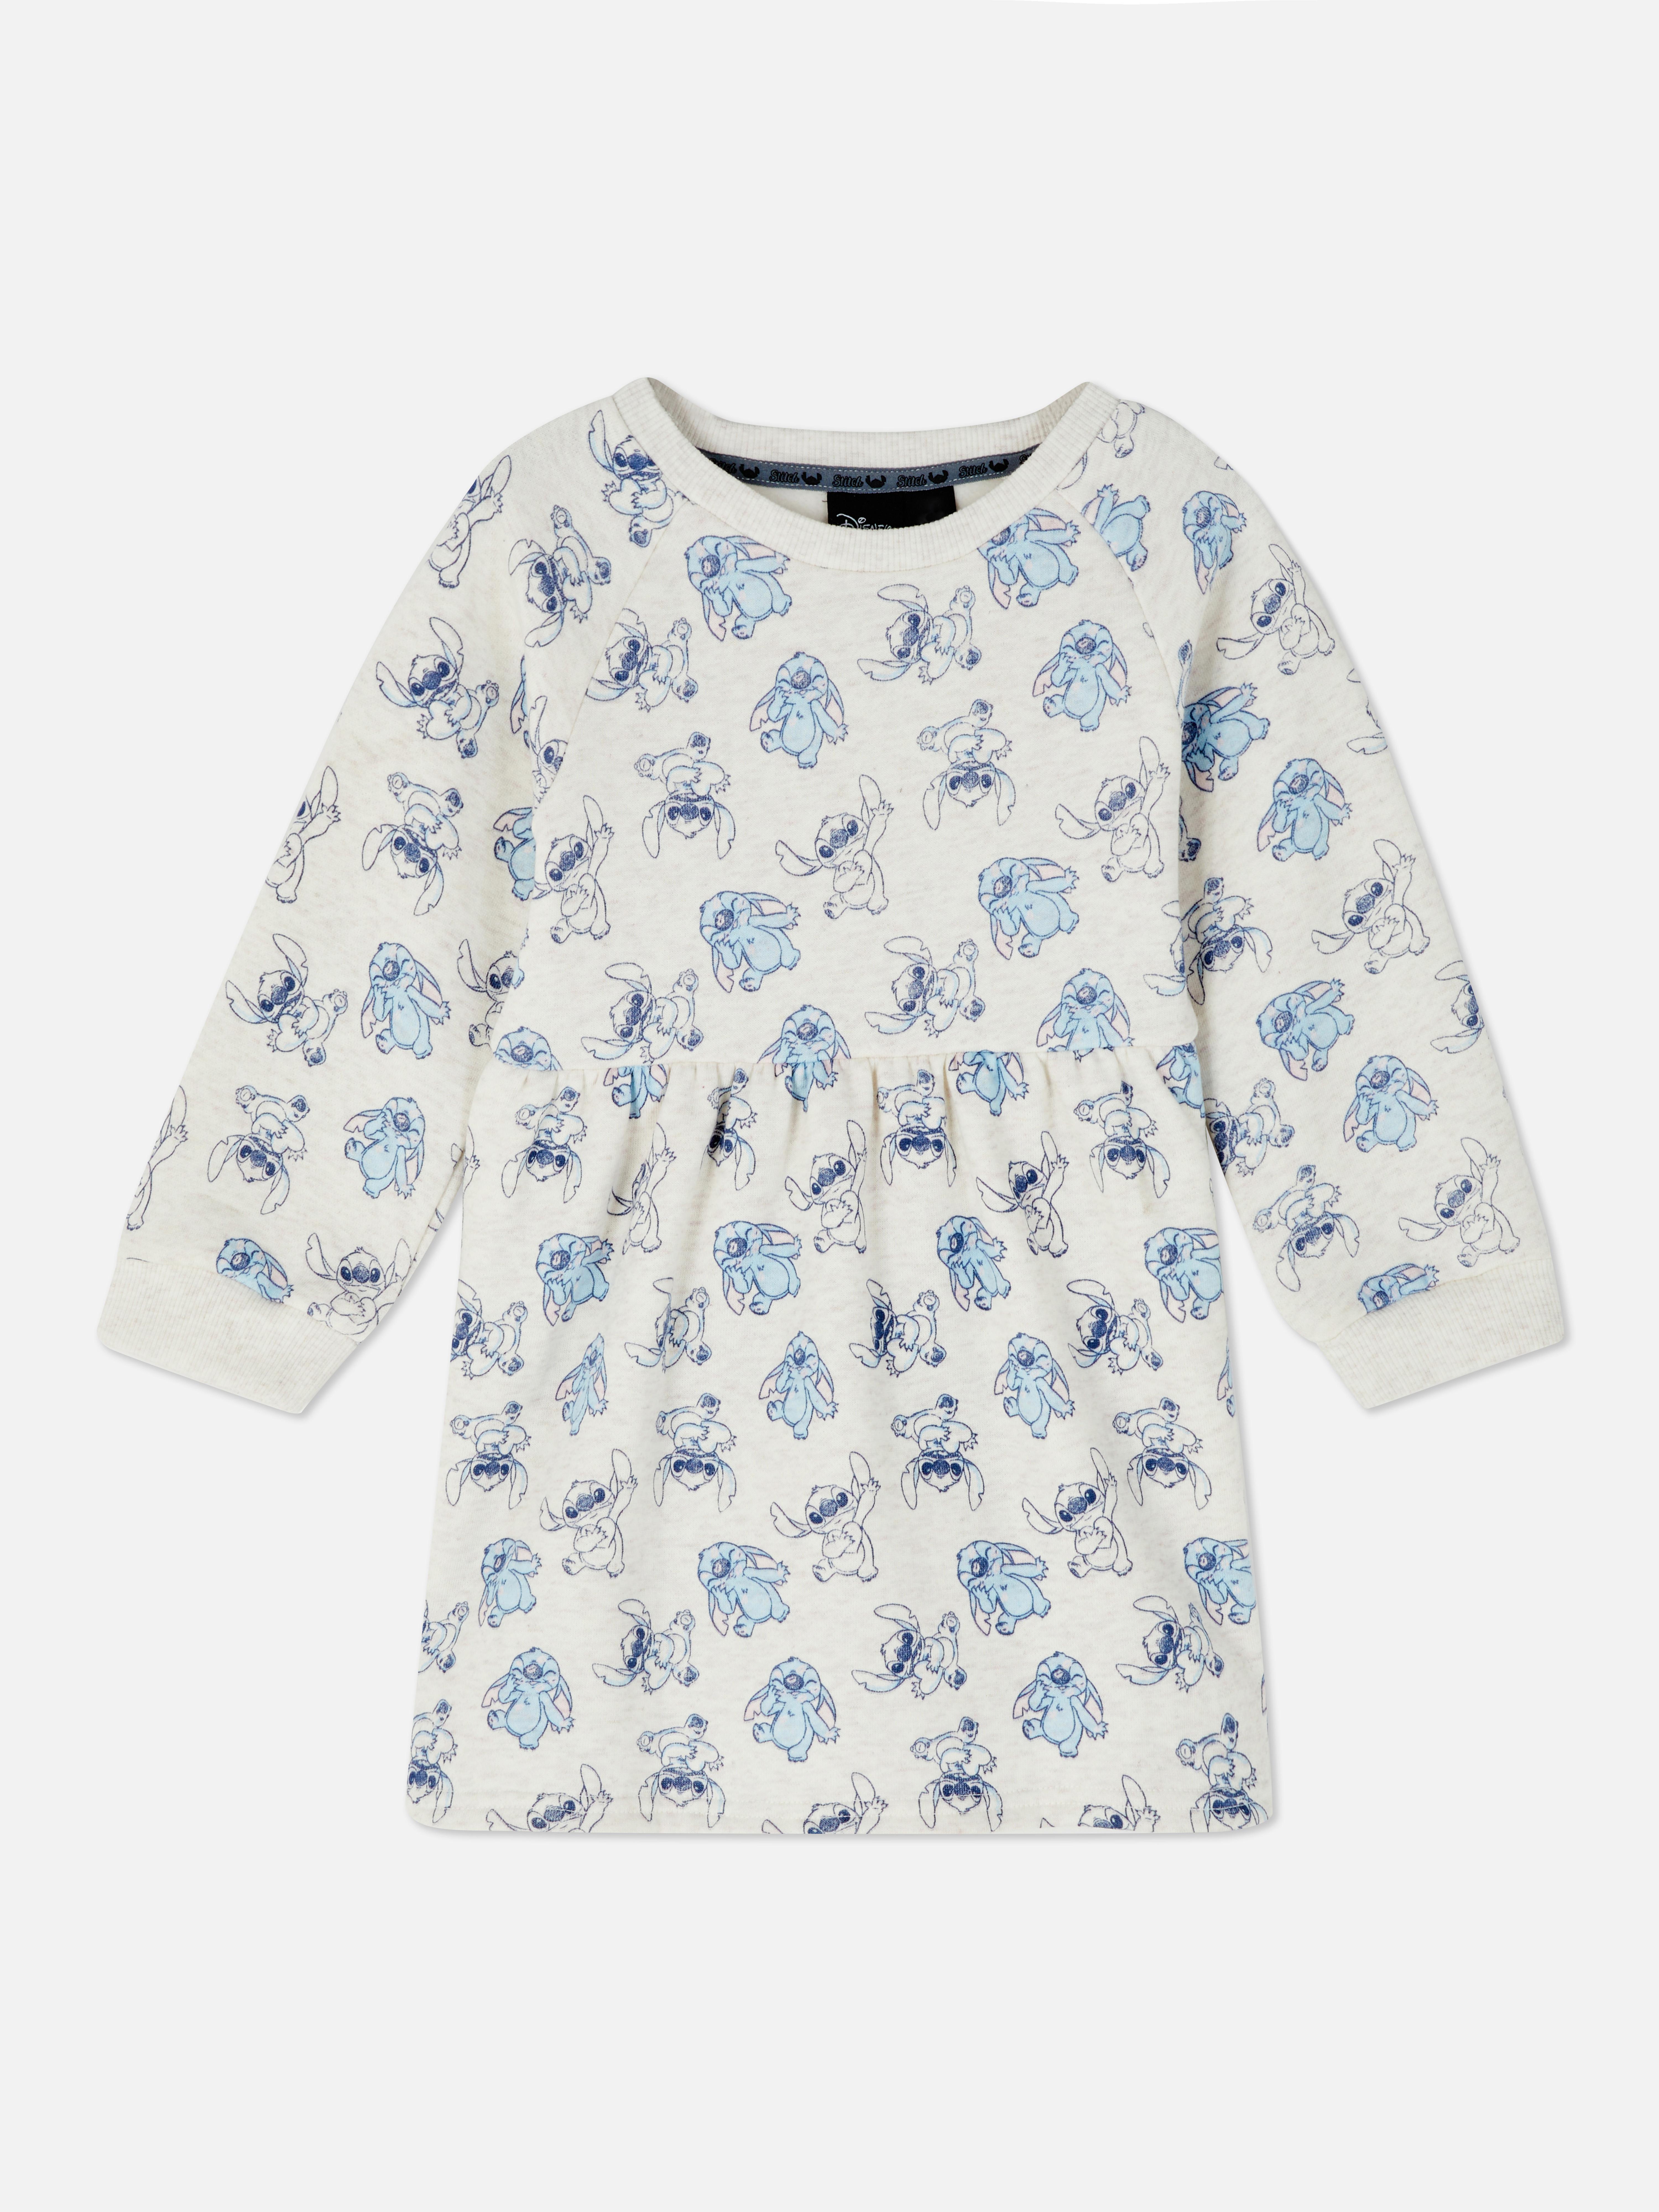 Disney’s Lilo & Stitch Sweatshirt Dress